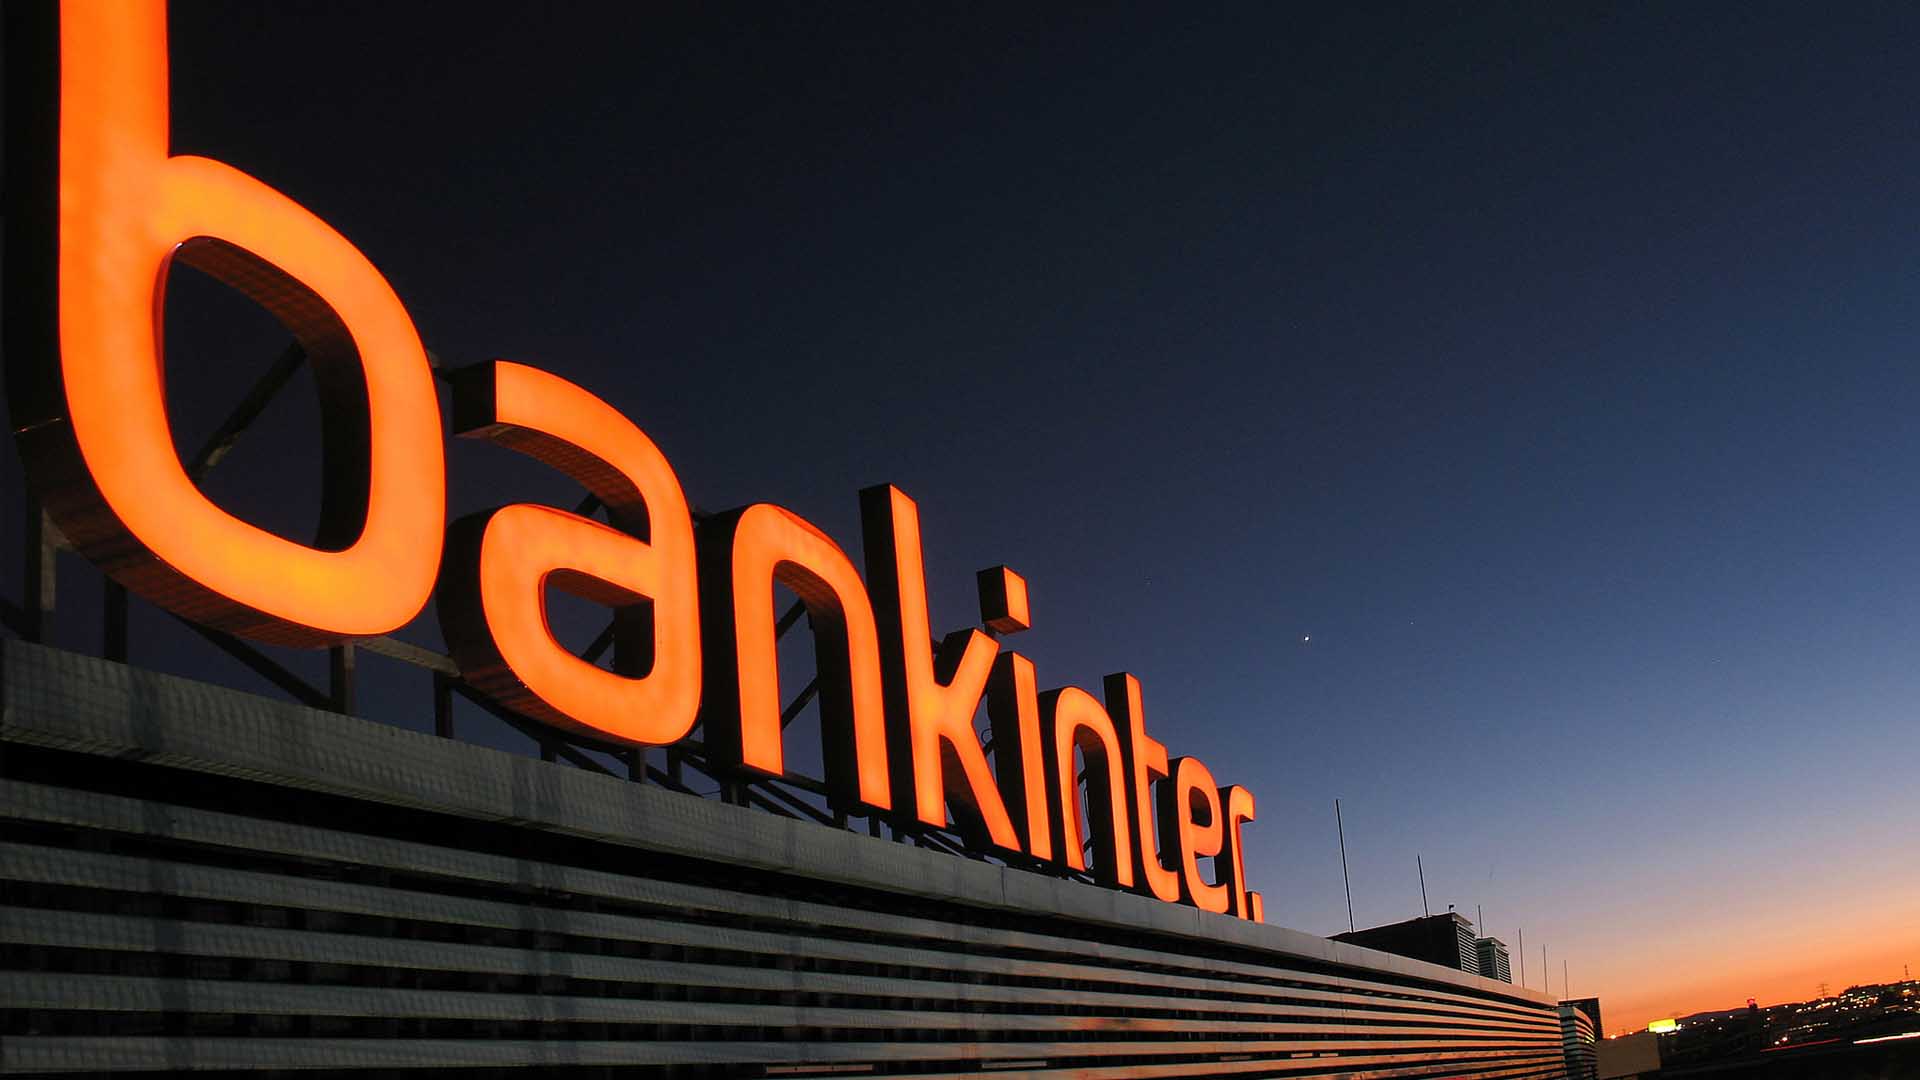 Bankinter compra los negocios de EVO Banco y Avantcard, su filial de consumo en Irlanda